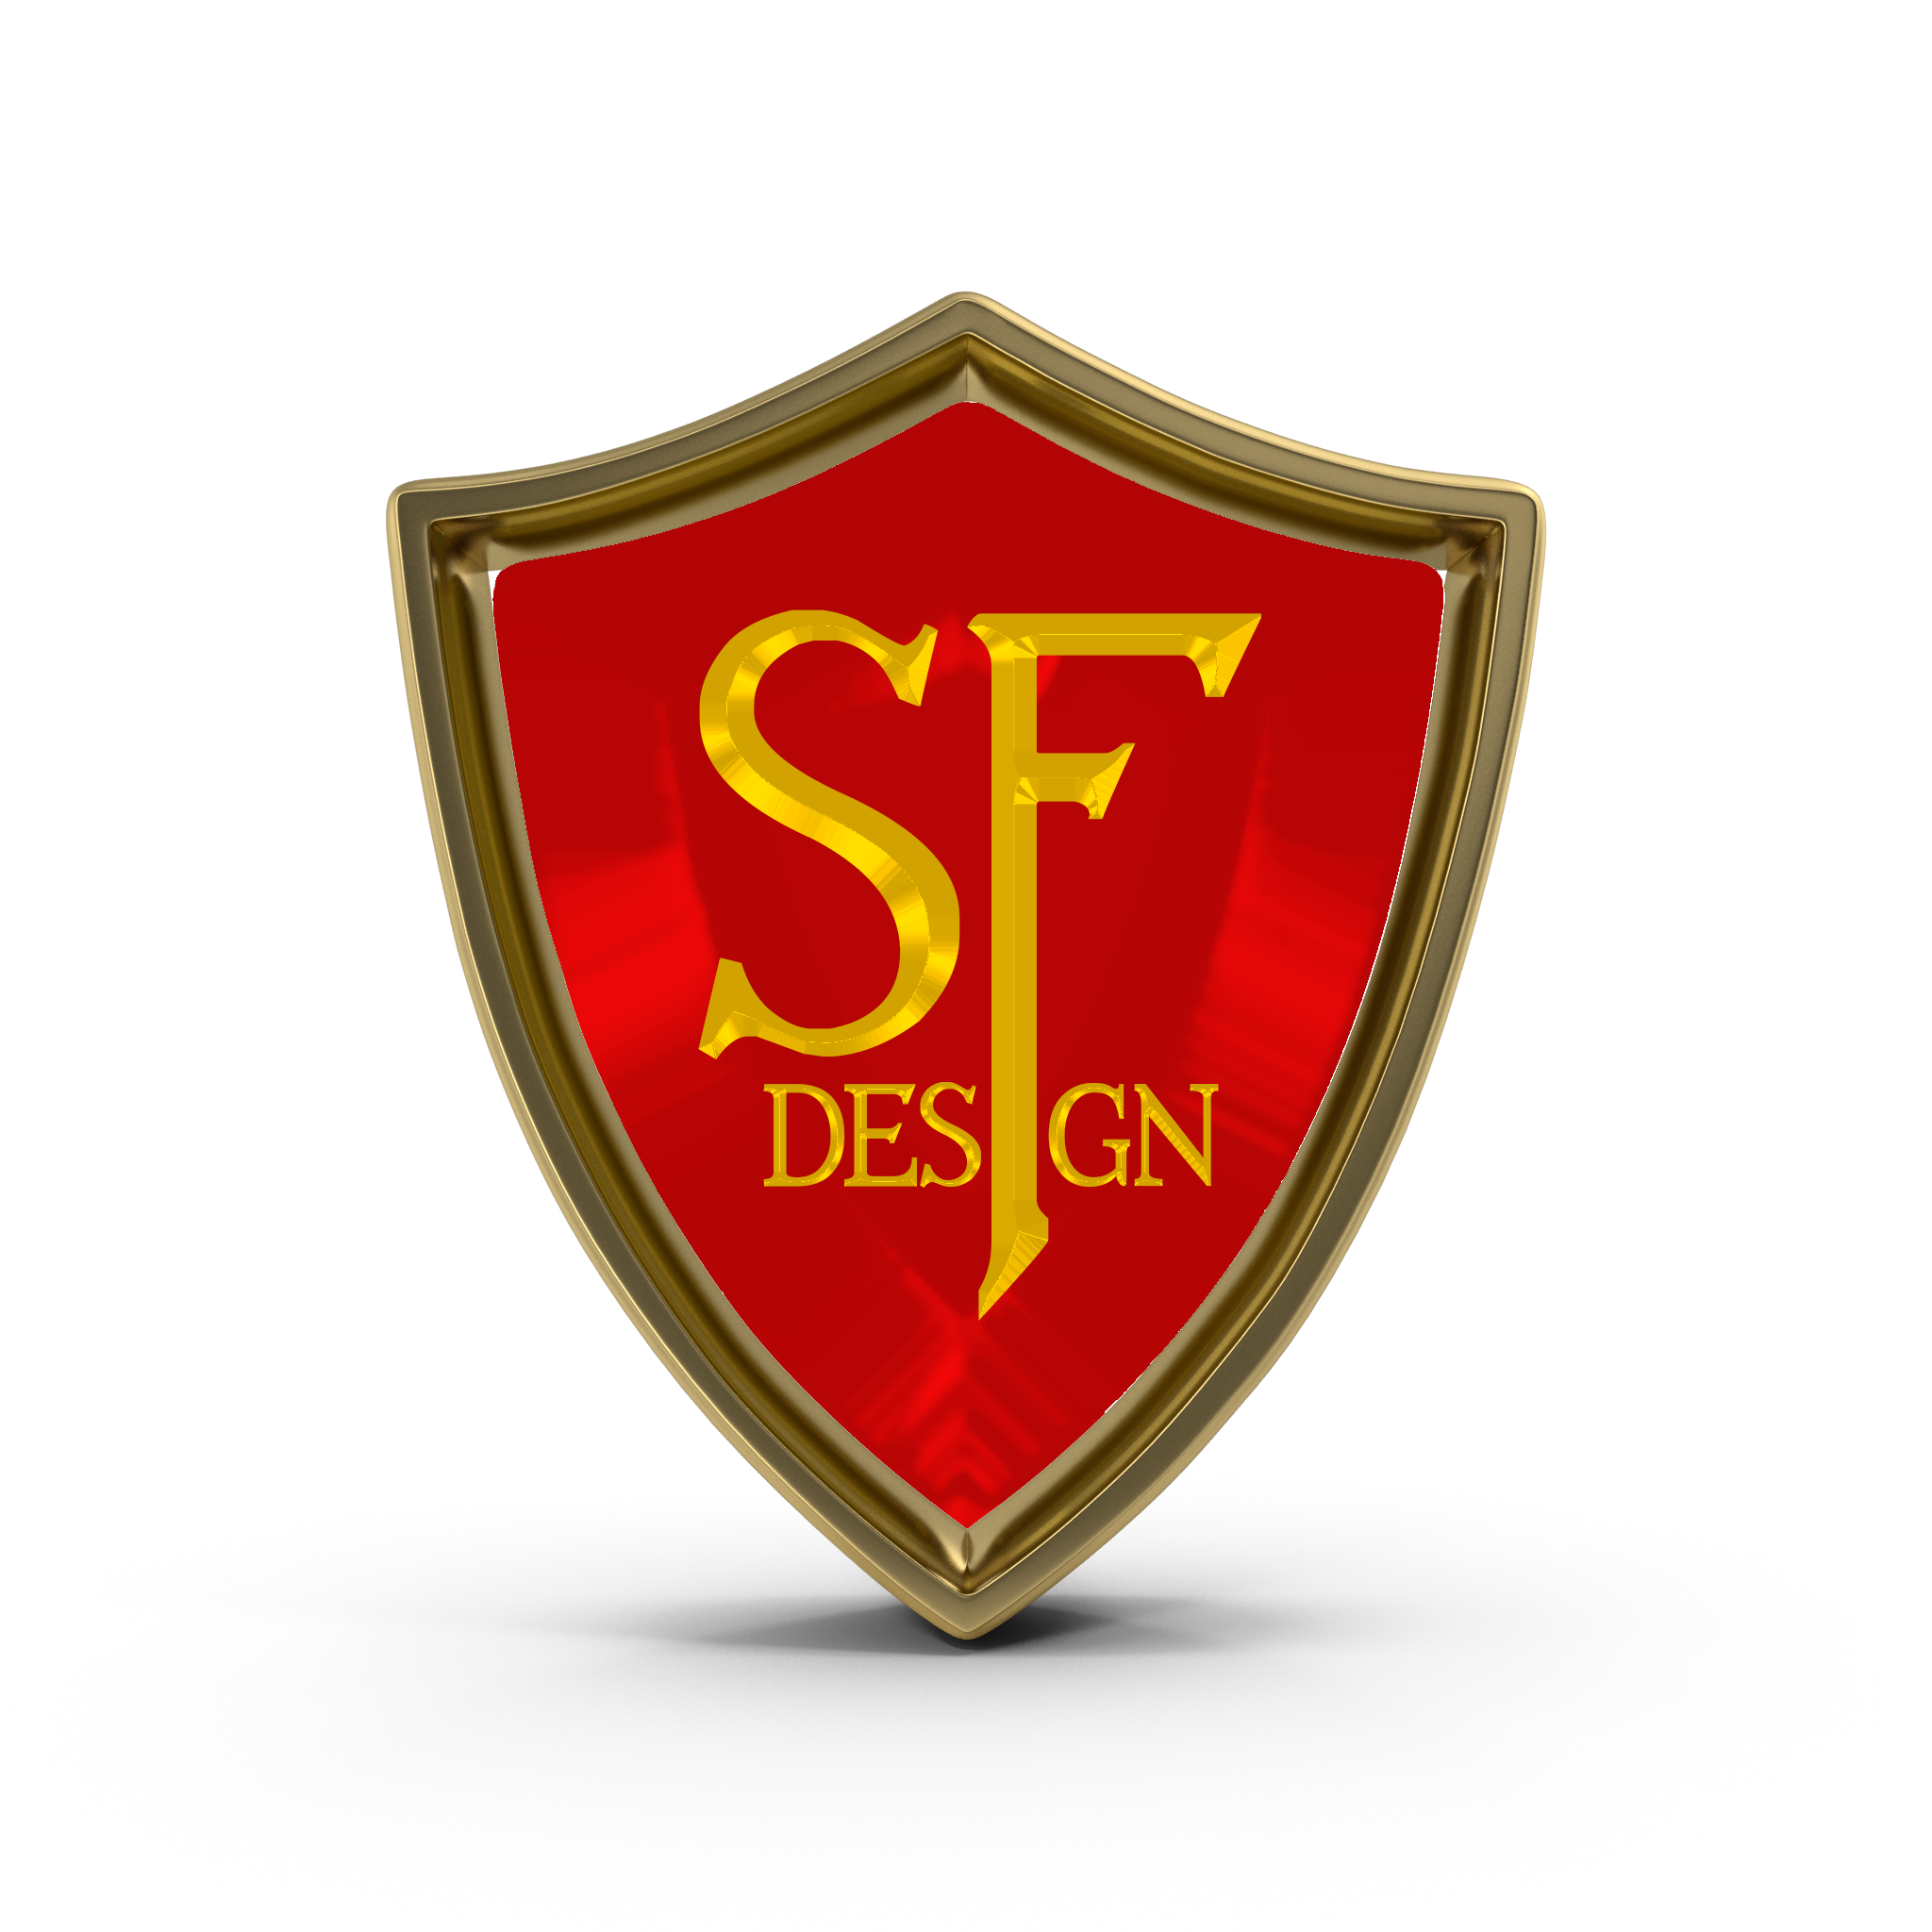 semper fi design logo